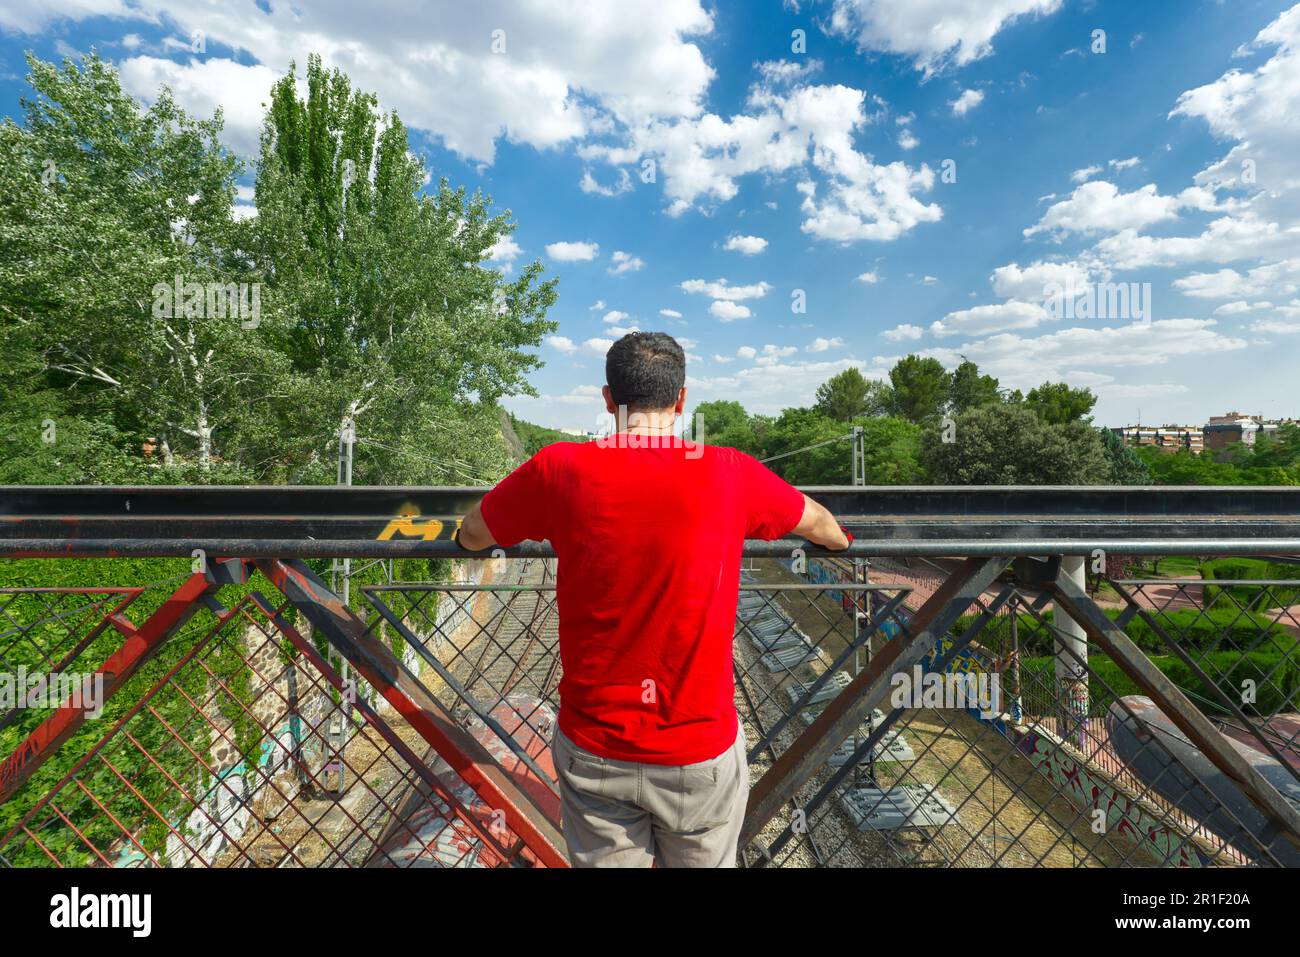 Ich habe mich selbst dargestellt, als ich die Gleise von einer Brücke mit einem hohen Stahlgeländer an einem Tag des hellen Himmels mit ein paar Wolken betrachtete Stockfoto